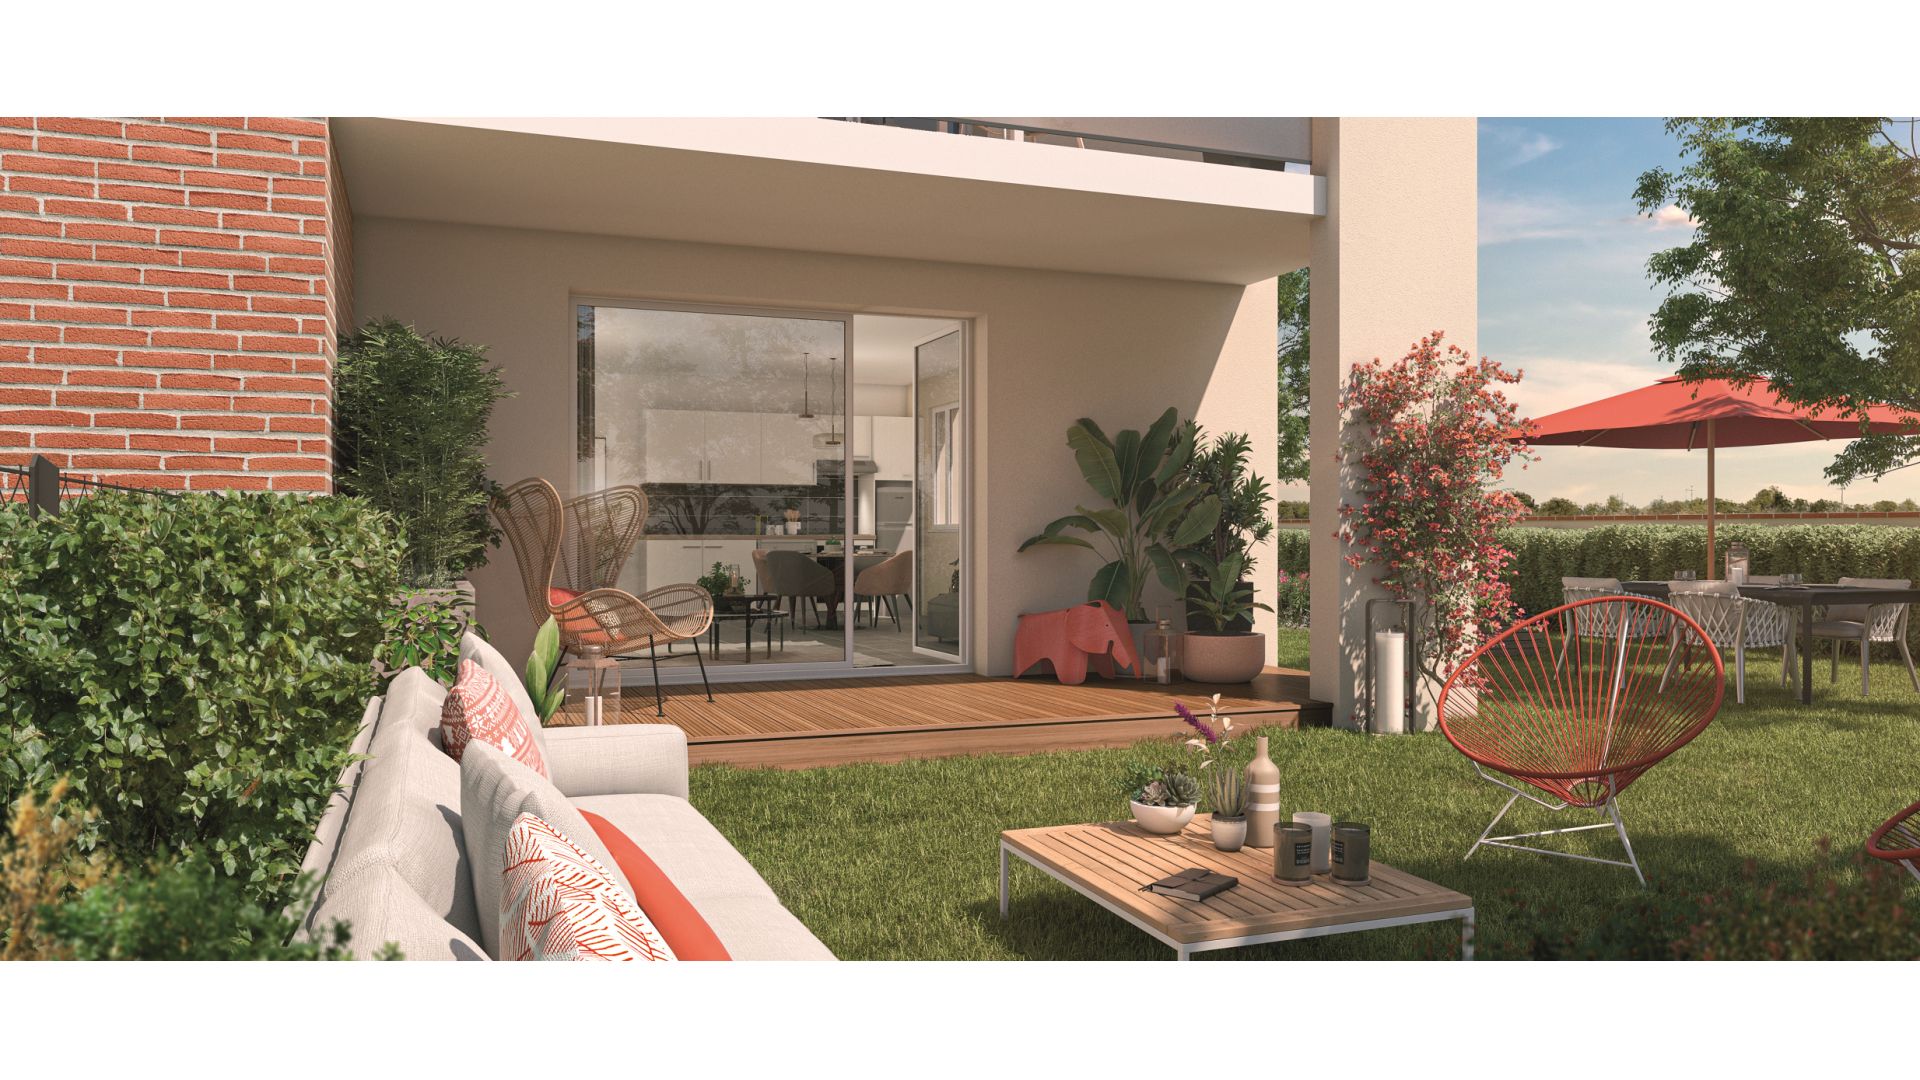 Greencity immobilier - achat appartements neufs du T2 au T3 - Résidence Le Montéverdi 1 - 31600 Eaunes - vue terrasse